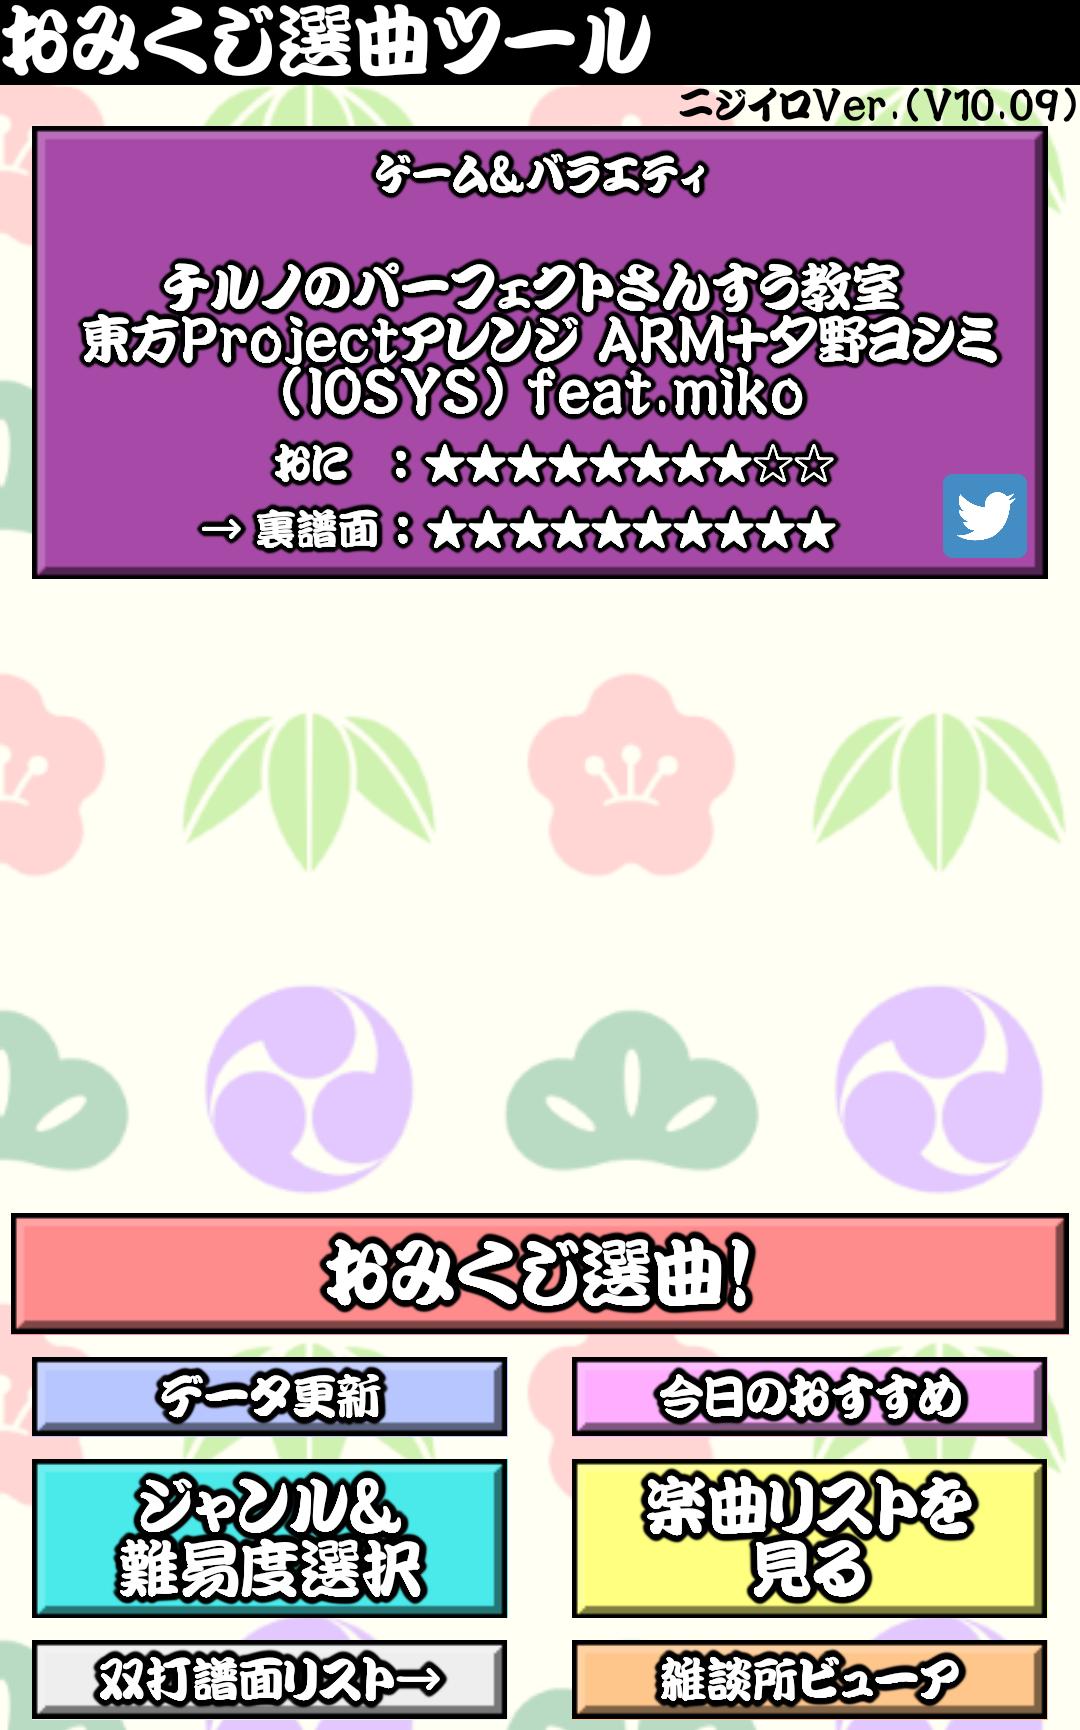 太鼓おみくじ＆雑談所ビューア2 1.63 Screenshot 5